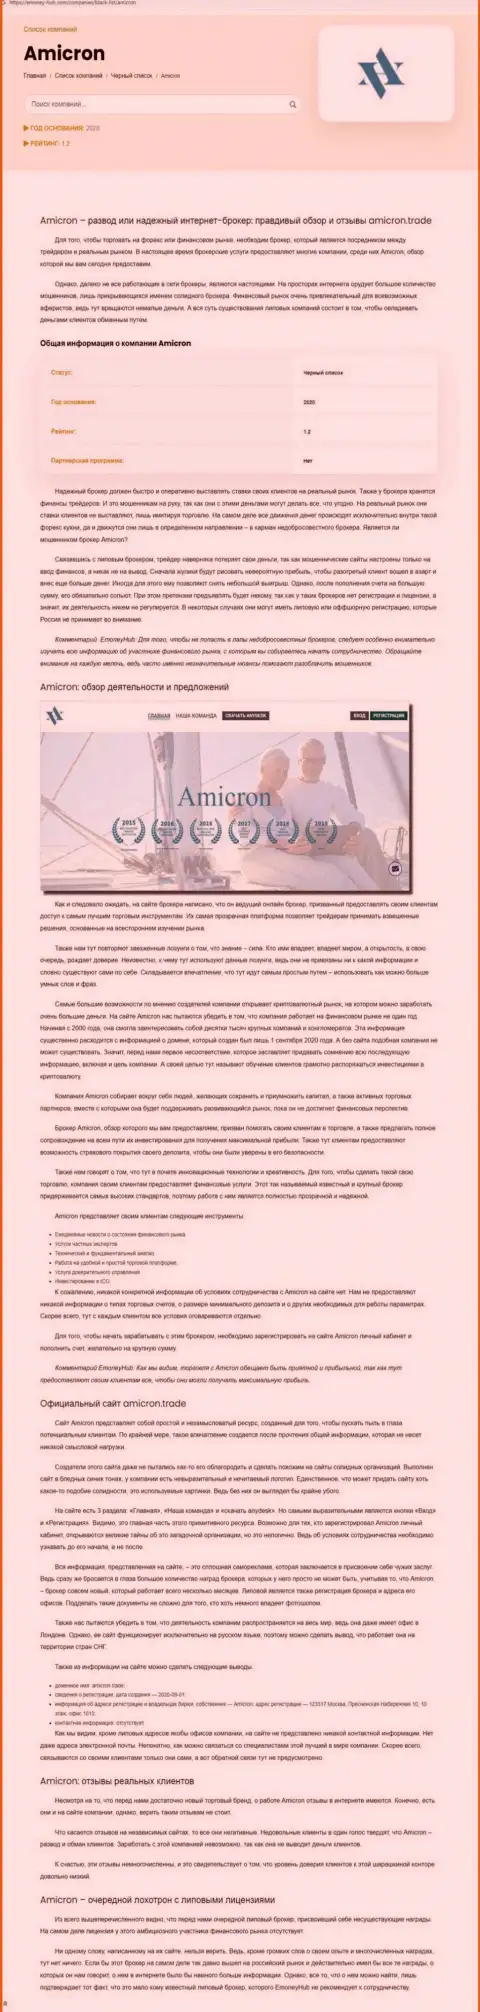 Amicron - это циничный развод клиентов (обзор противоправных махинаций)